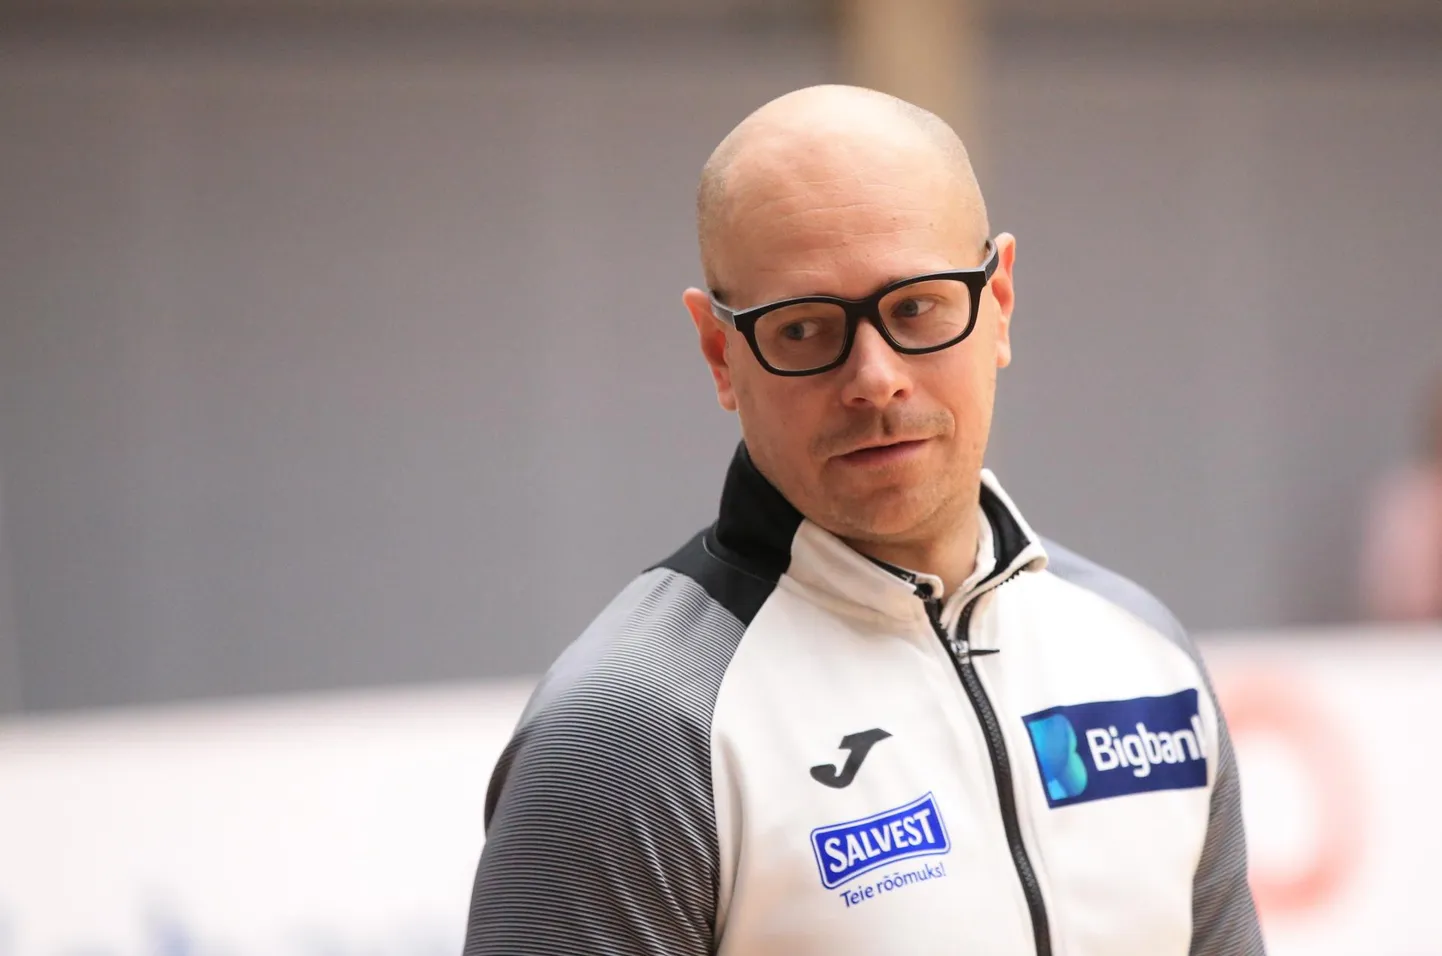 Eesti meistriks tulnud Bigbank Tartu peatreener on kolm aastat olnud Alar Rikberg.